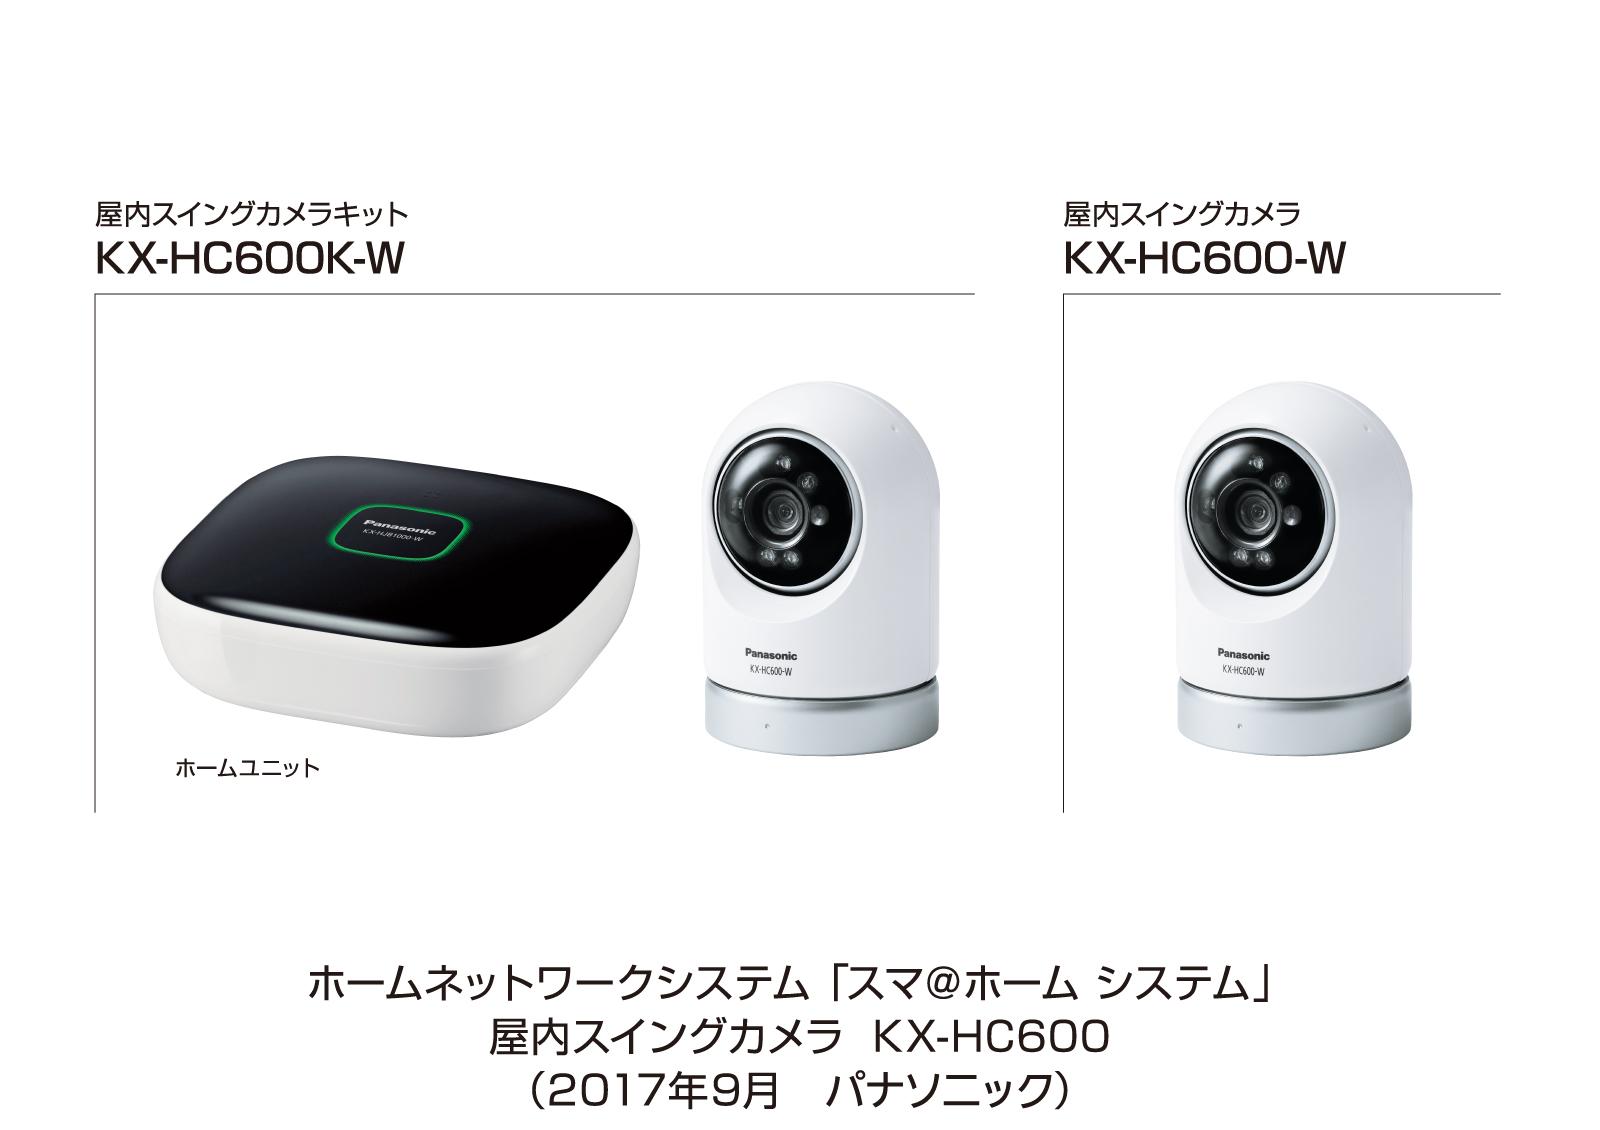 ホームネットワークシステム「スマ＠ホーム システム」 屋内スイングカメラ KX-HC600